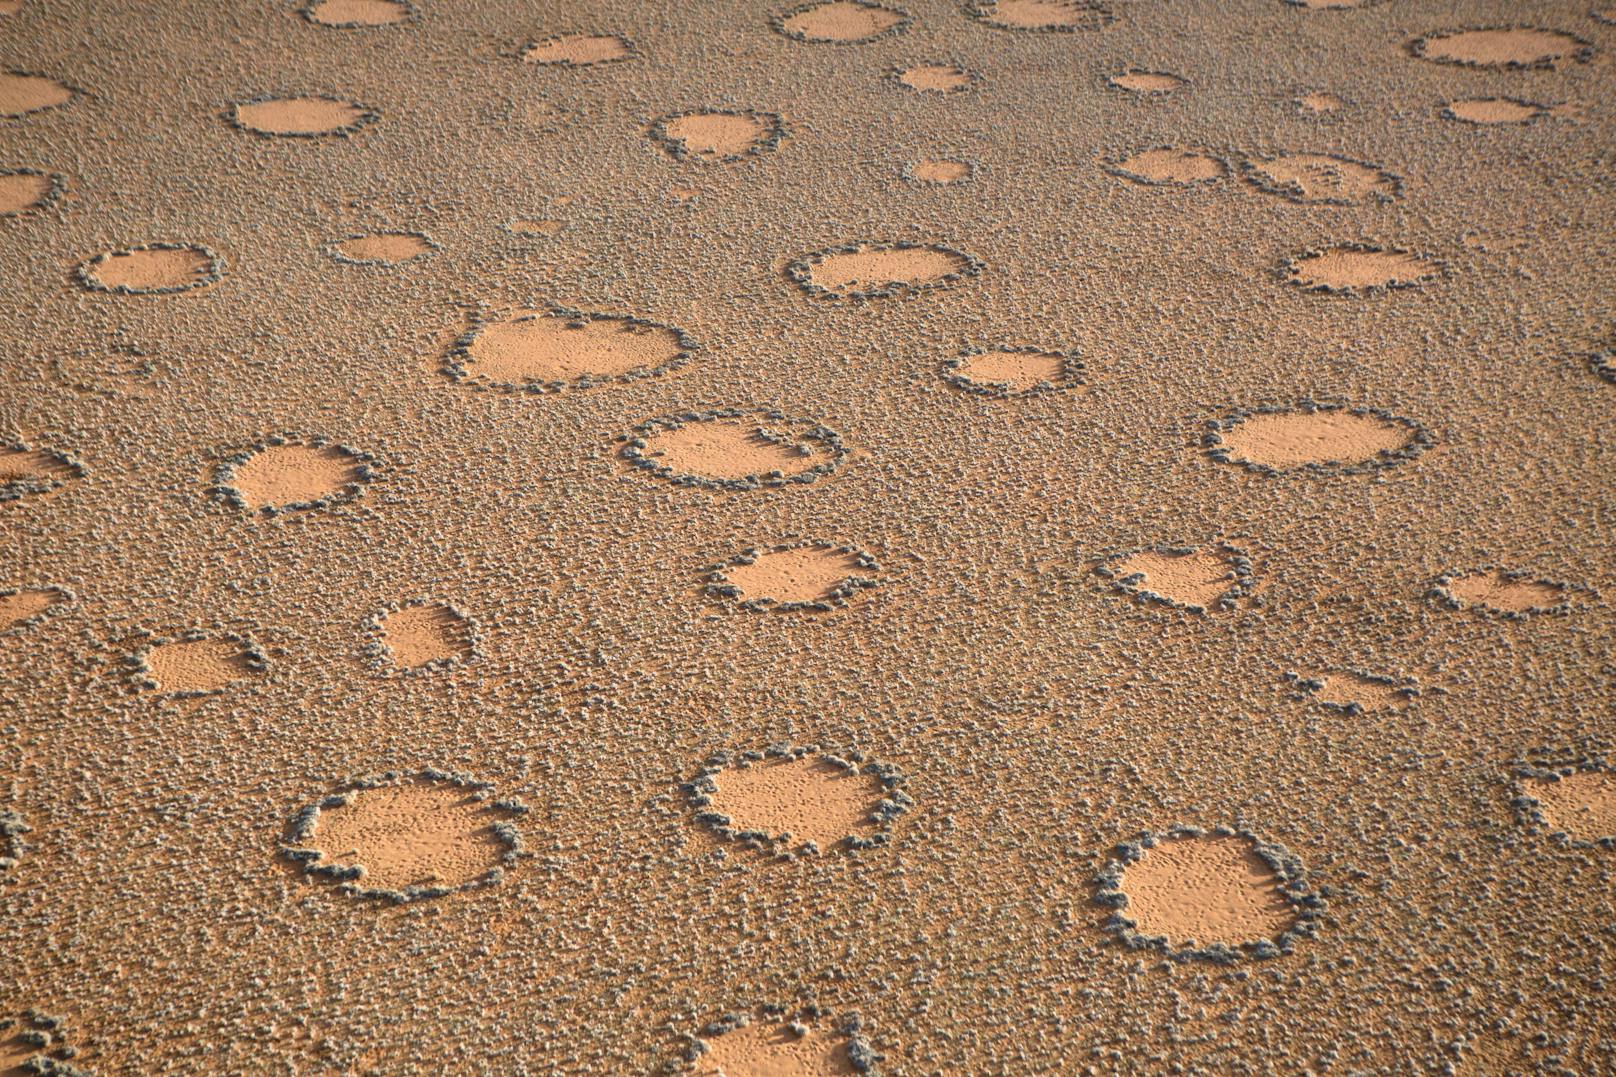 Regelmäßige, kreisförmige Muster zieren die australische Wüste. (Symbolbild)